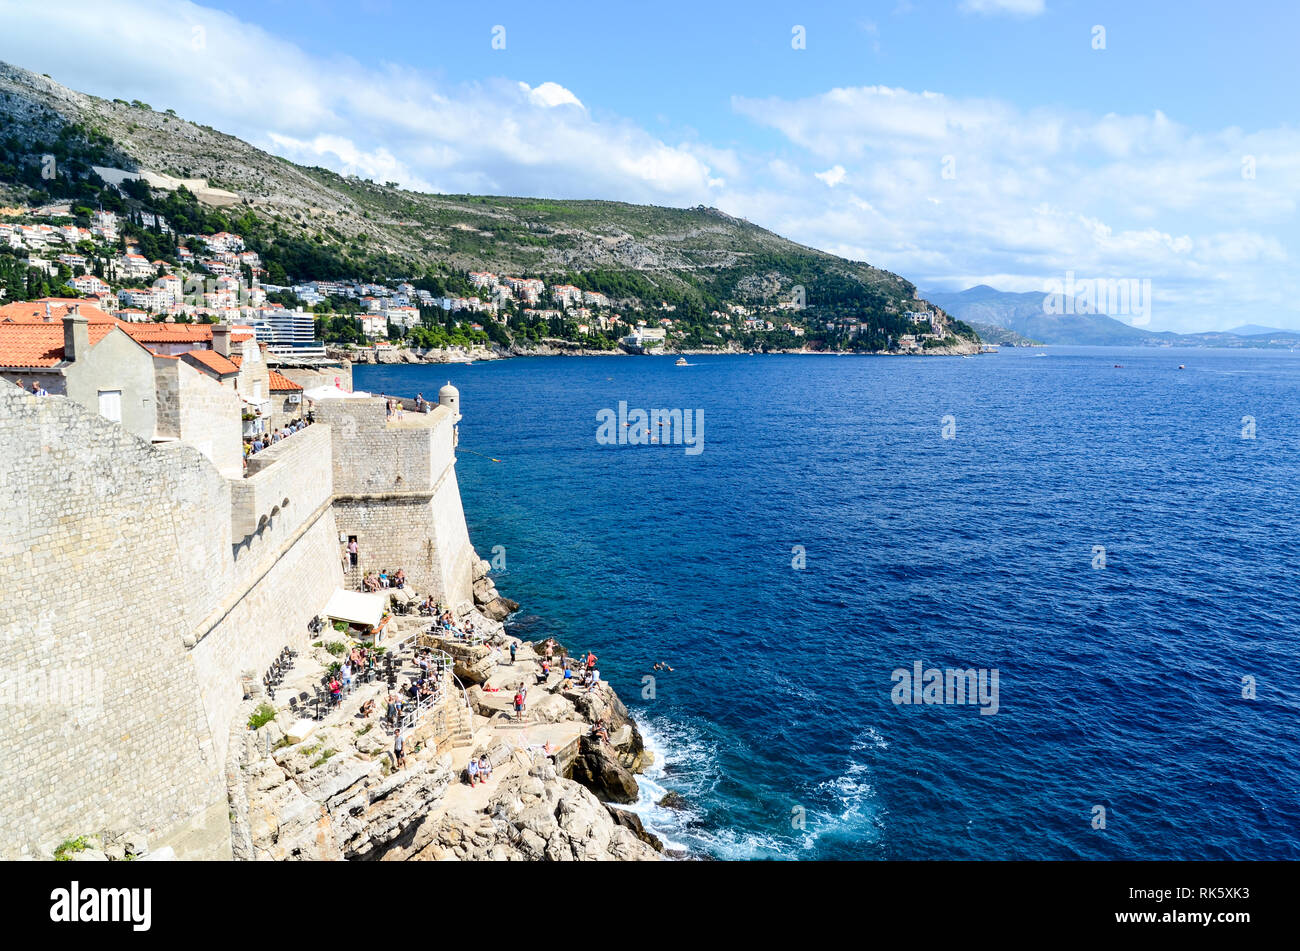 Visitatori di Dubrovnik sulle rocce del mare Adriatico Foto Stock